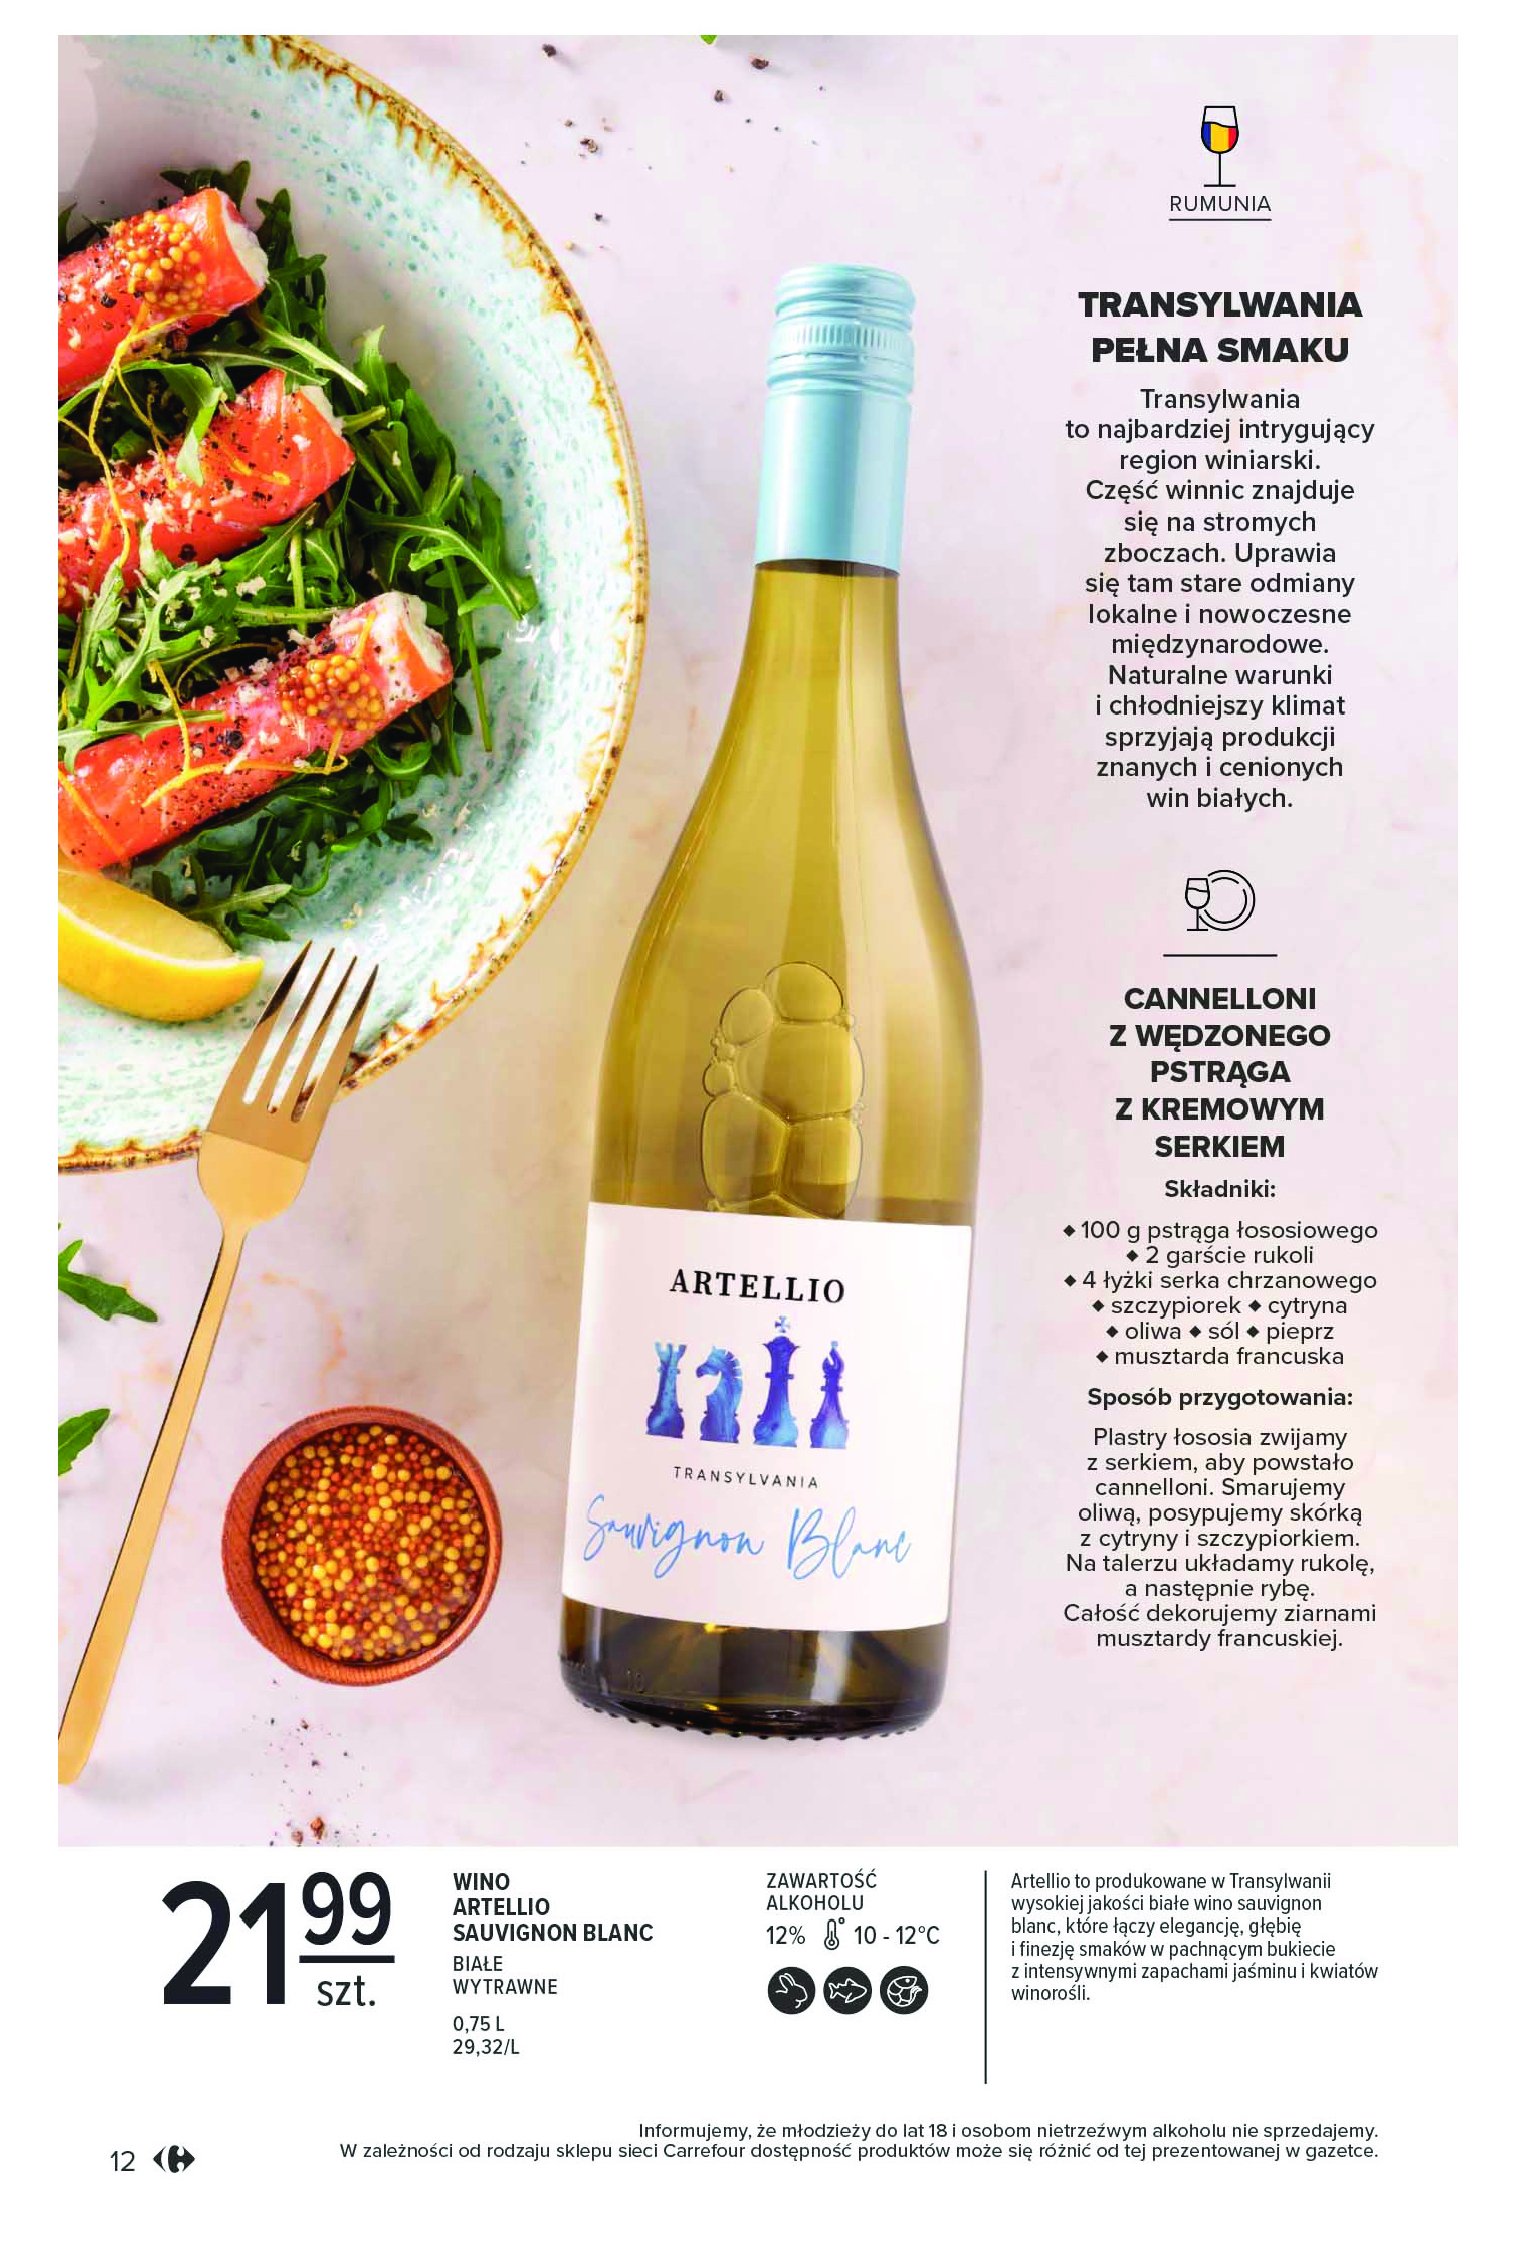 Wino Artellio sauvignon blanc promocja